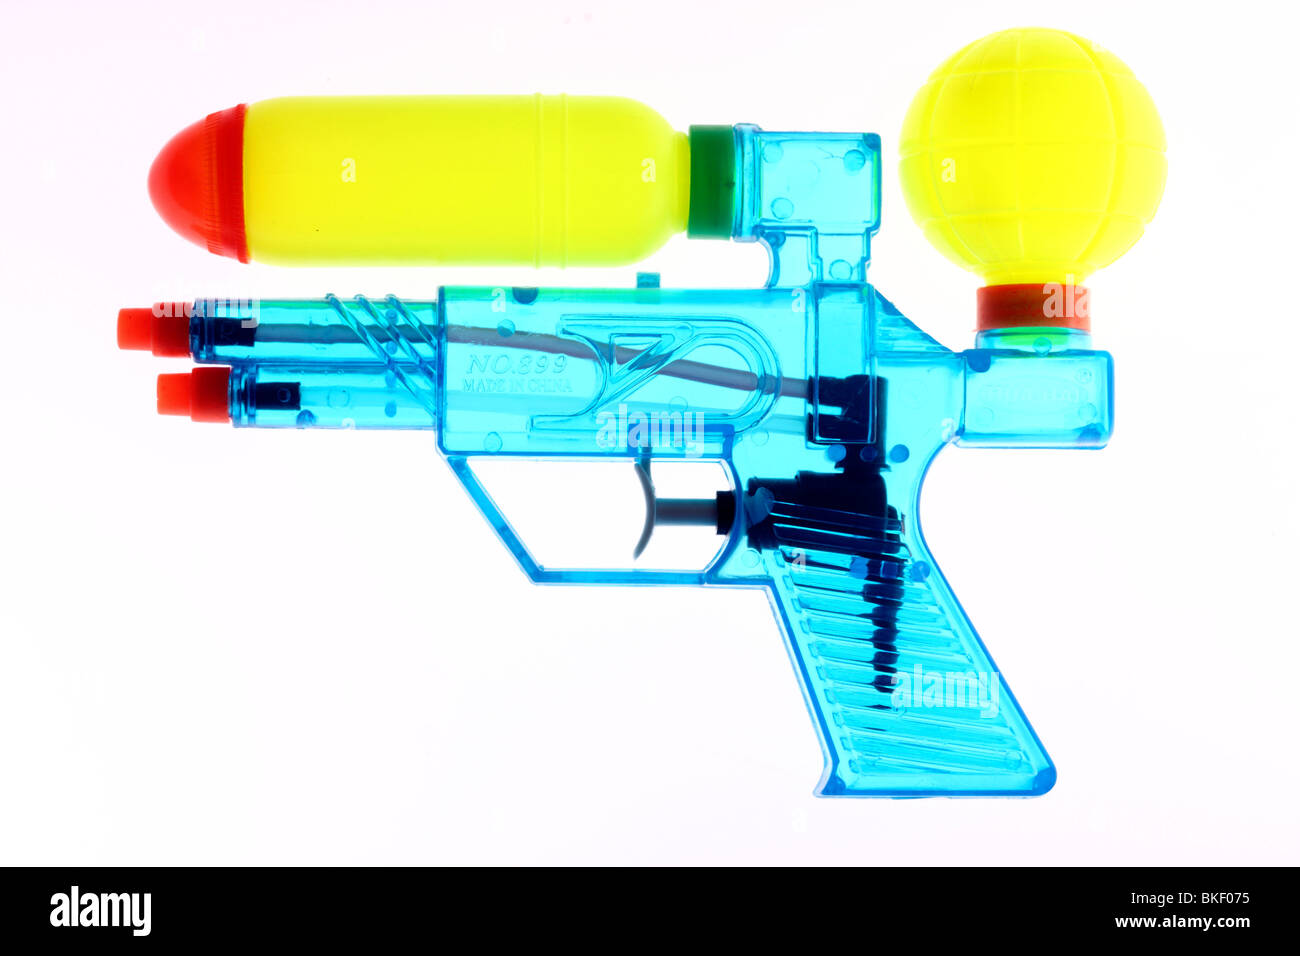 Canon à eau, pistolet à eau, jouet, transparent. Banque D'Images